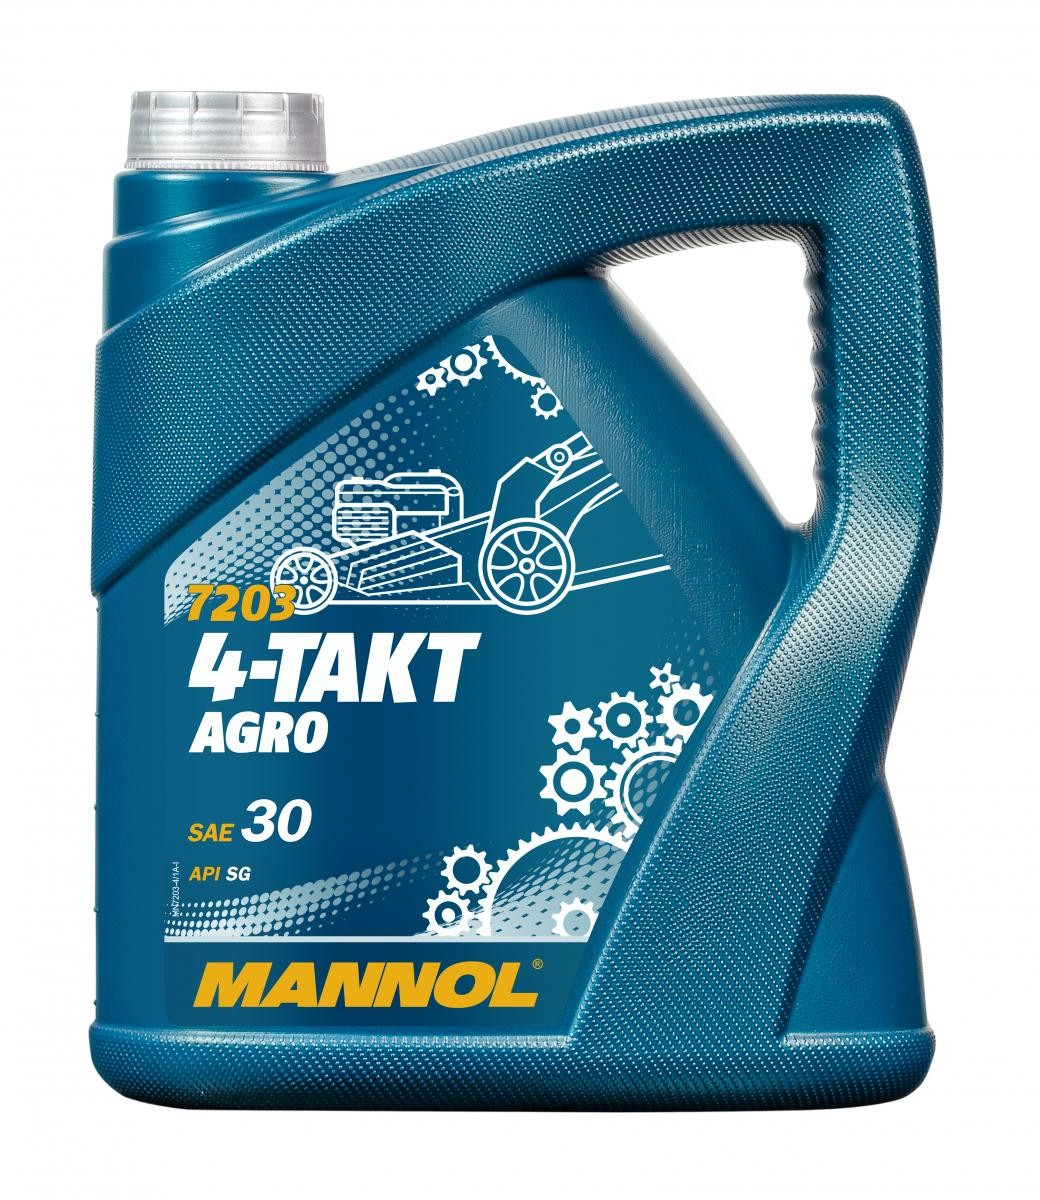 Mannol 7203 4-Takt Agro SAE 30 Rasenmäheröl Motoröl 4 Liter